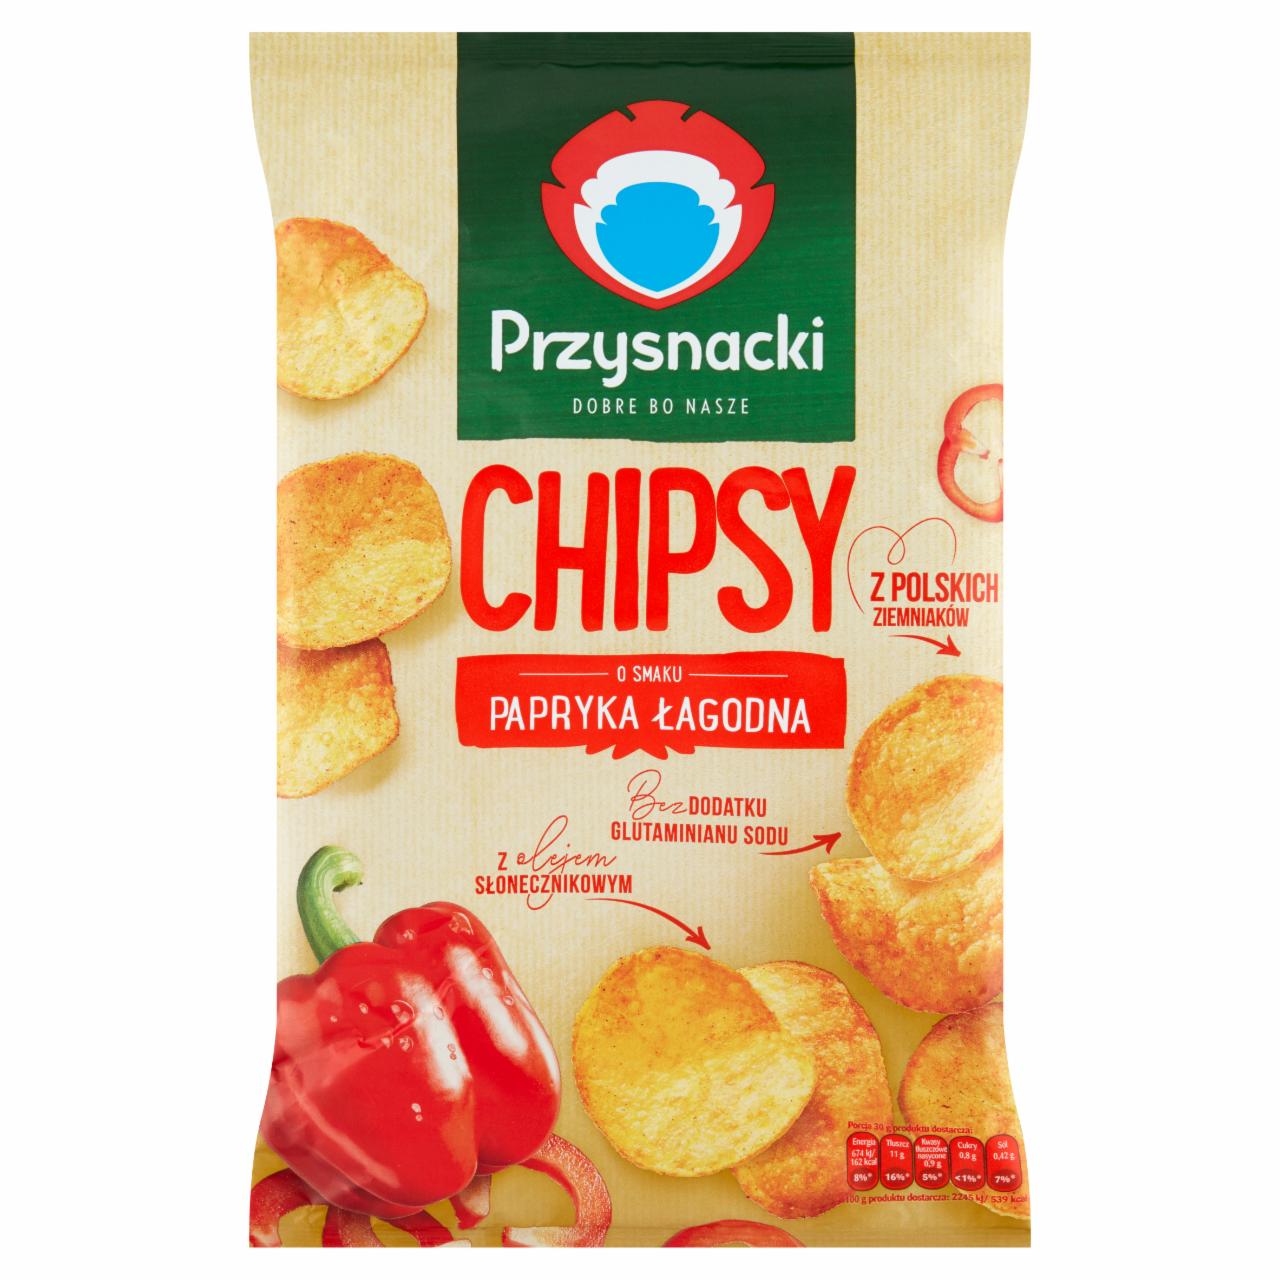 Zdjęcia - Przysnacki Chipsy o smaku papryka łagodna 135 g